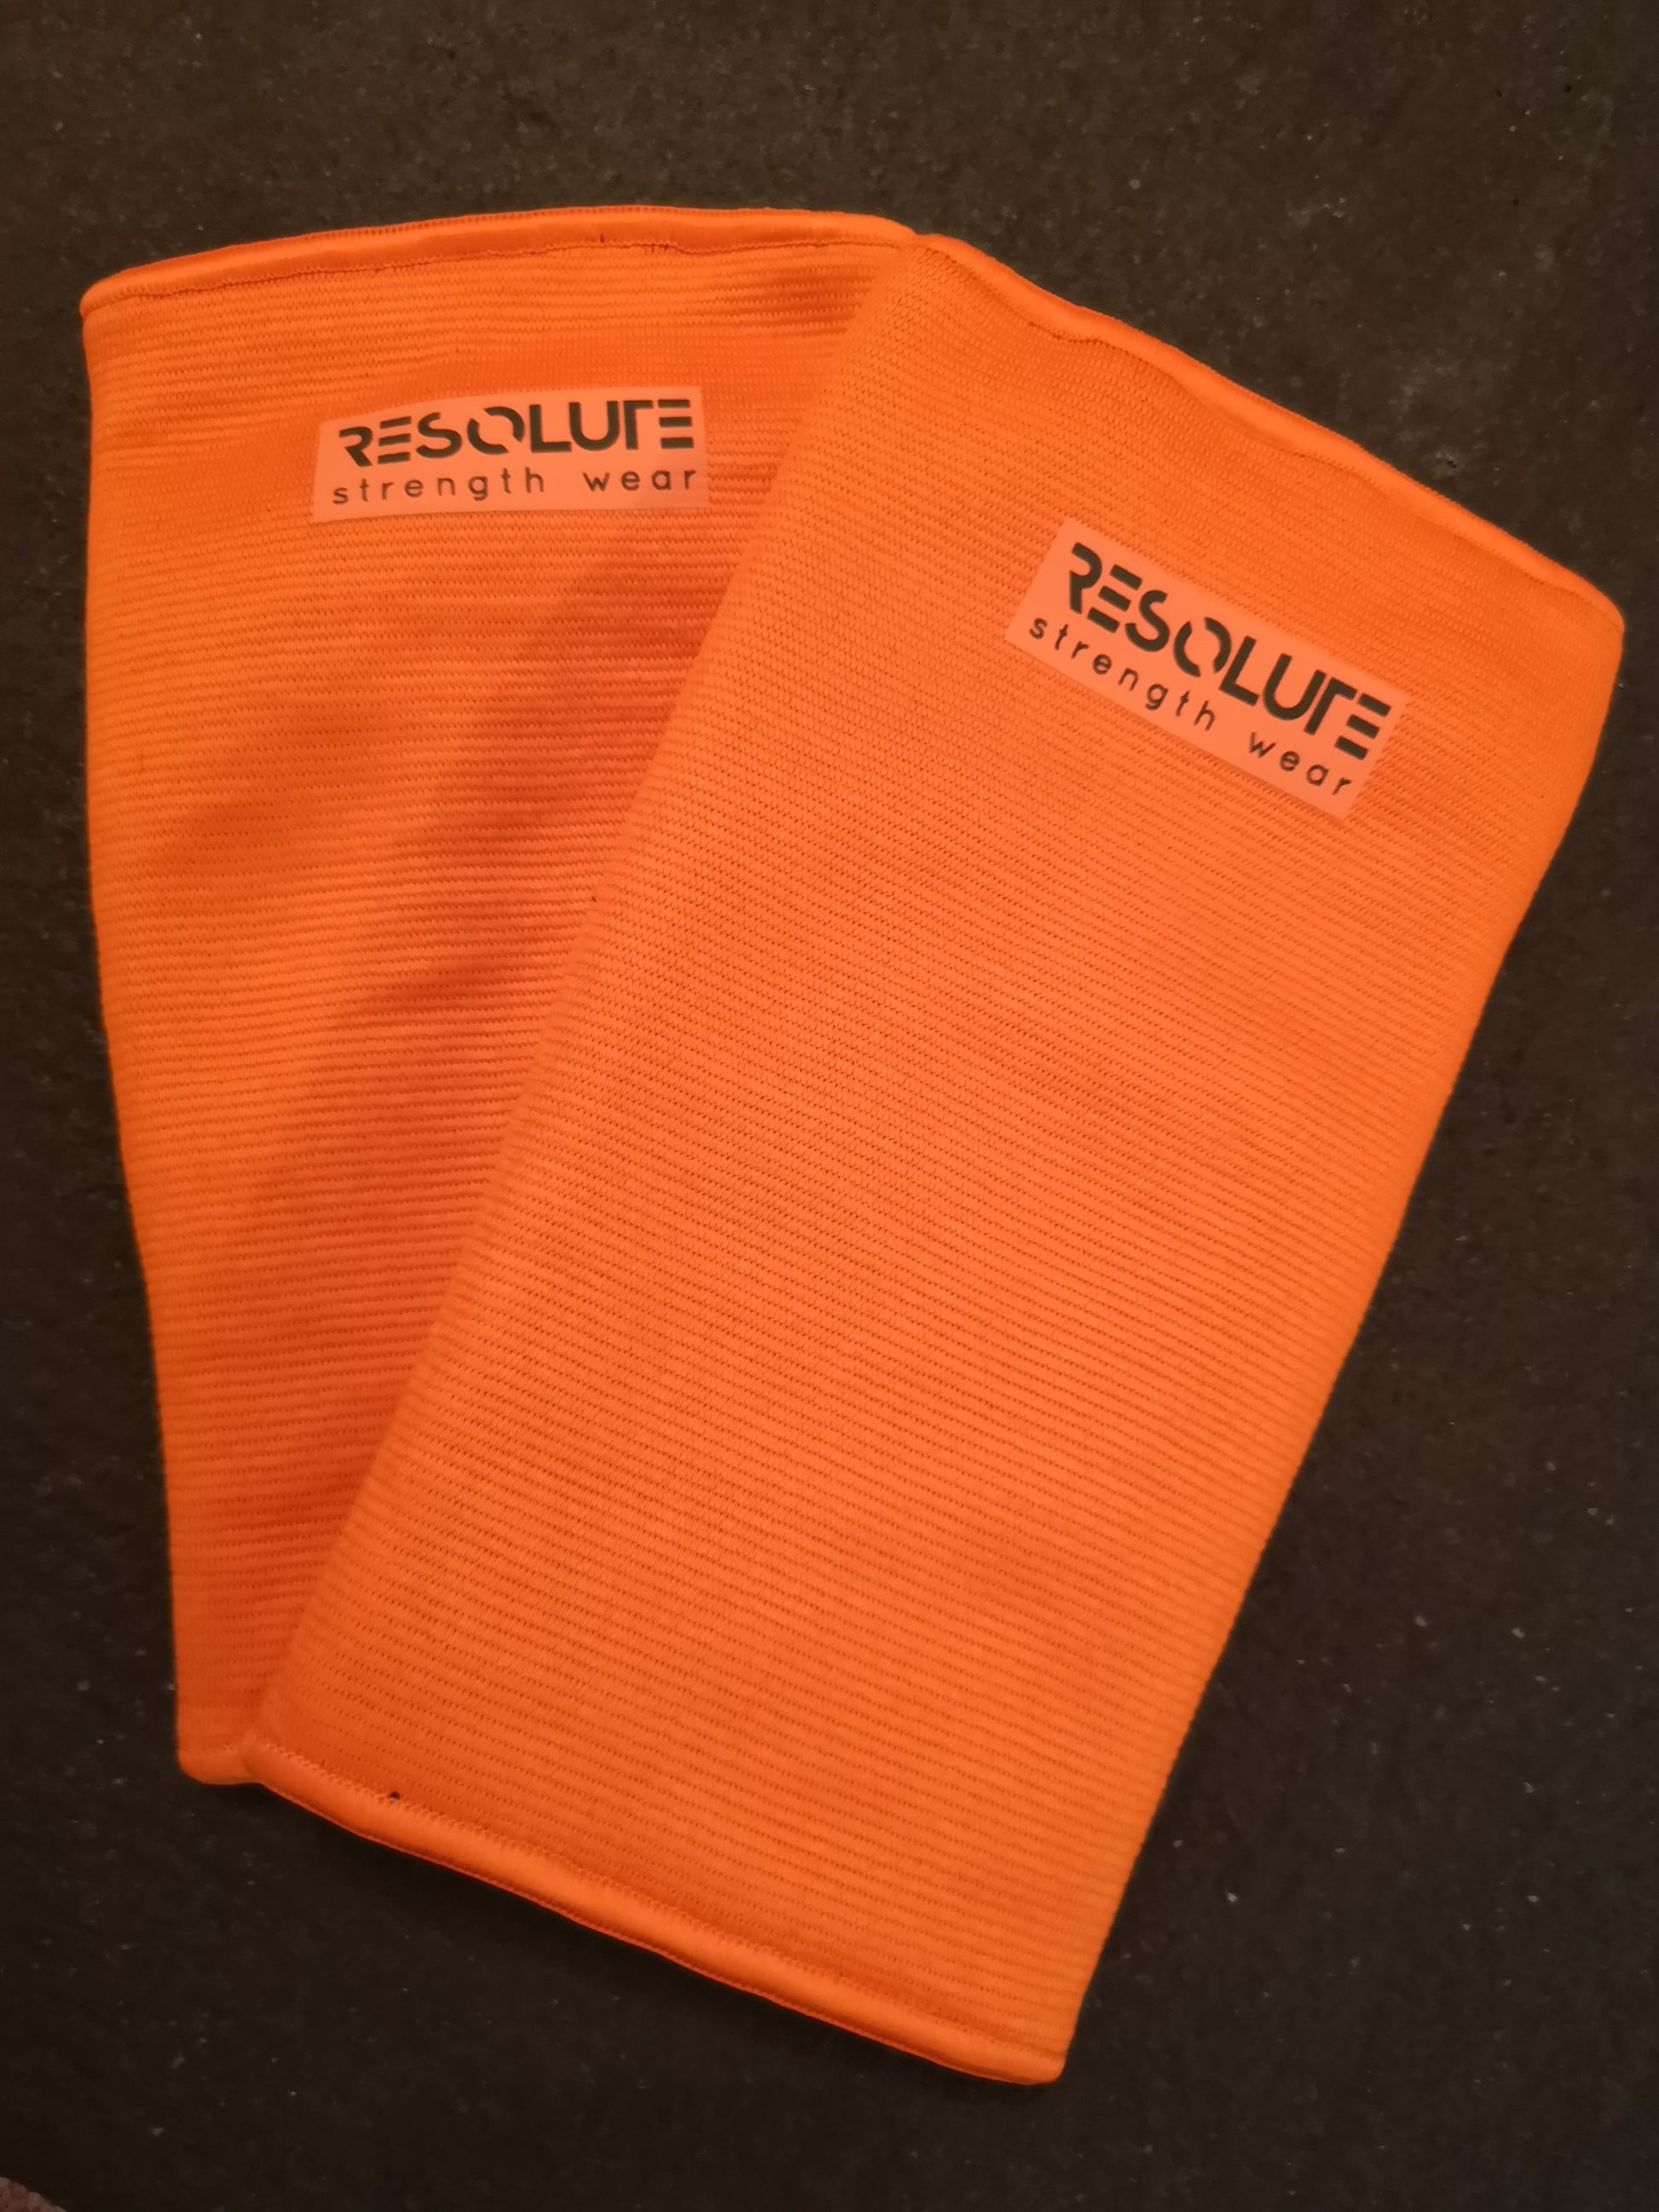 Orange Elbow Sleeves - TRIPLE PLY - Resolute Strength Wear